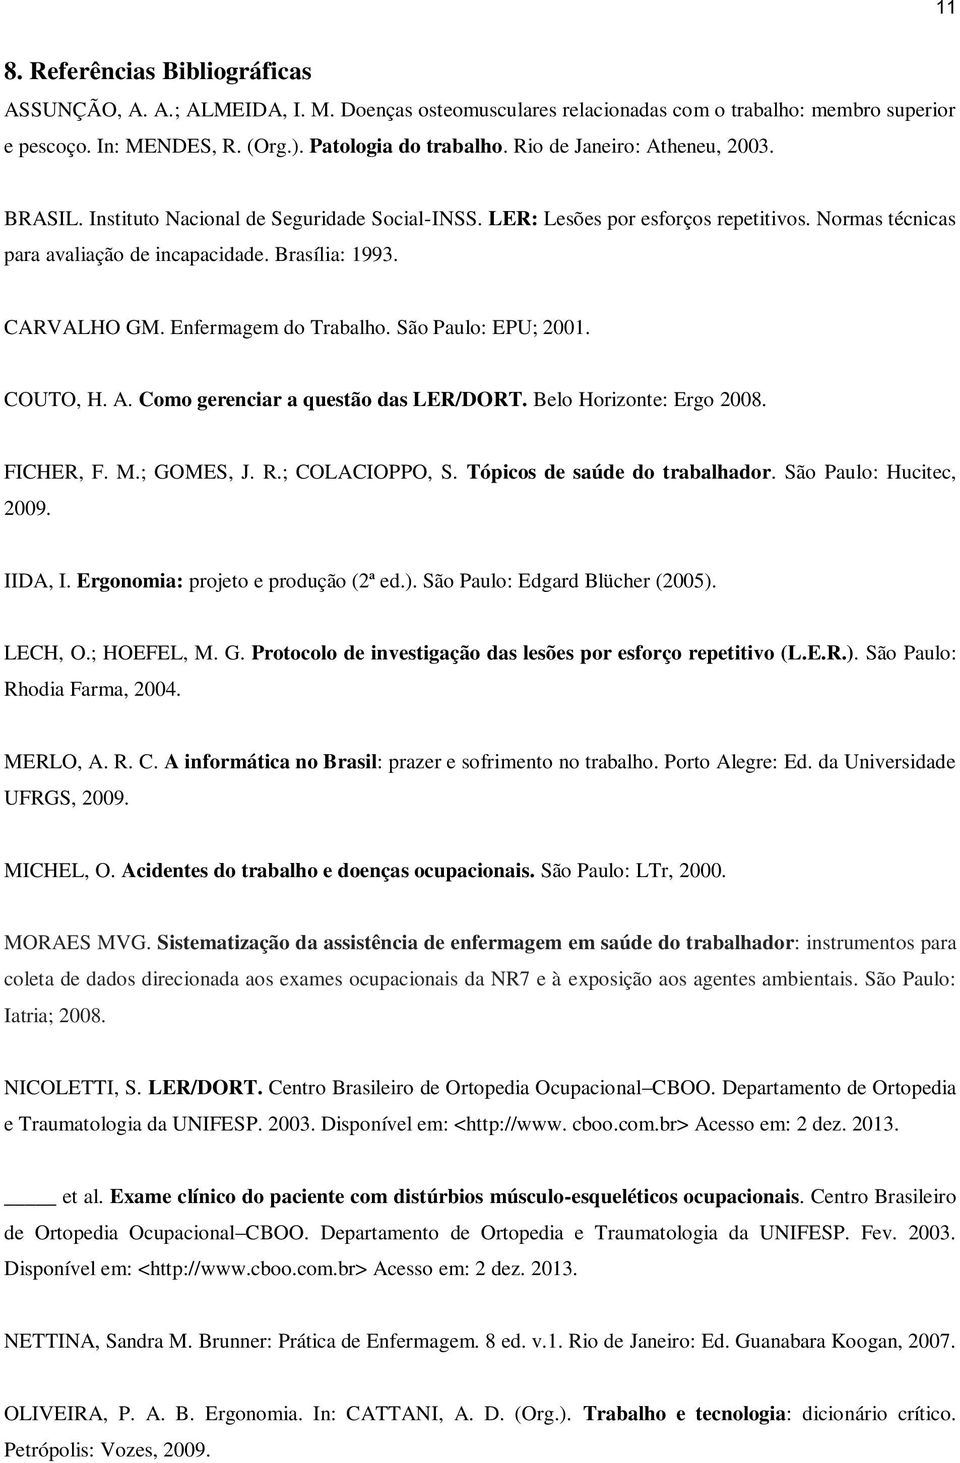 Enfermagem do Trabalho. São Paulo: EPU; 2001. COUTO, H. A. Como gerenciar a questão das LER/DORT. Belo Horizonte: Ergo 2008. FICHER, F. M.; GOMES, J. R.; COLACIOPPO, S.